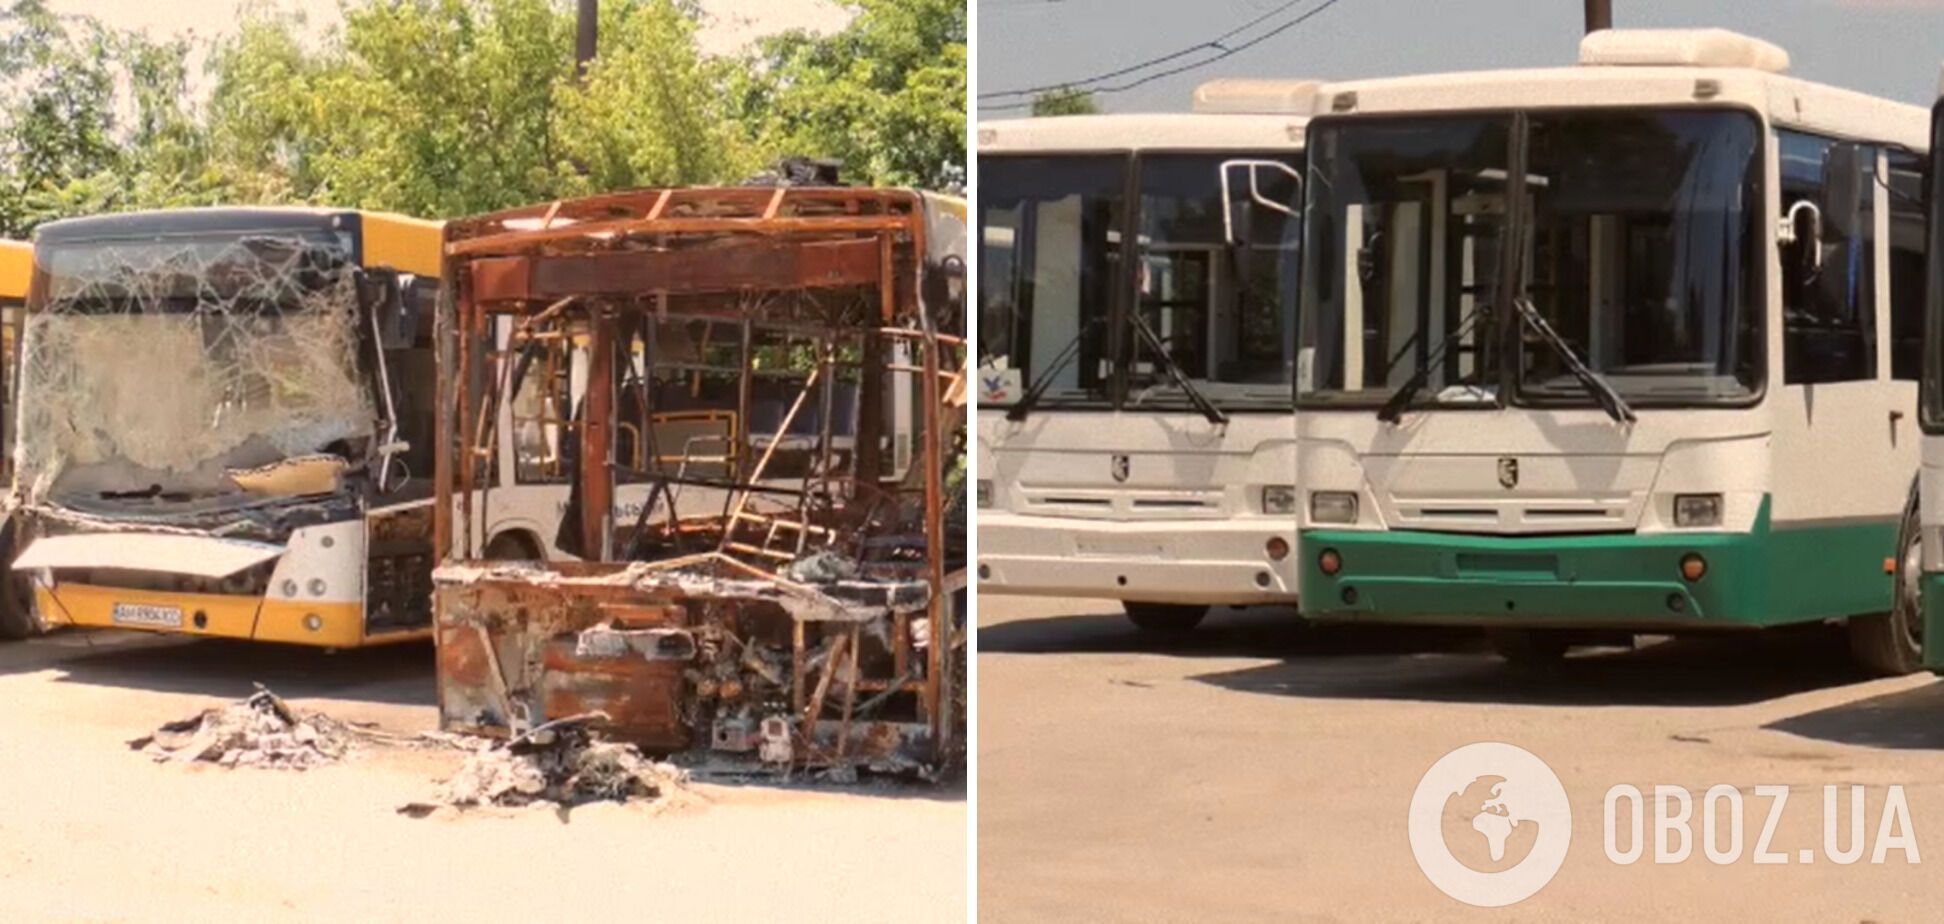 Російські окупанти подарували Маріуполю 10 вживаних автобусів замість зруйнованих ними 130 нових